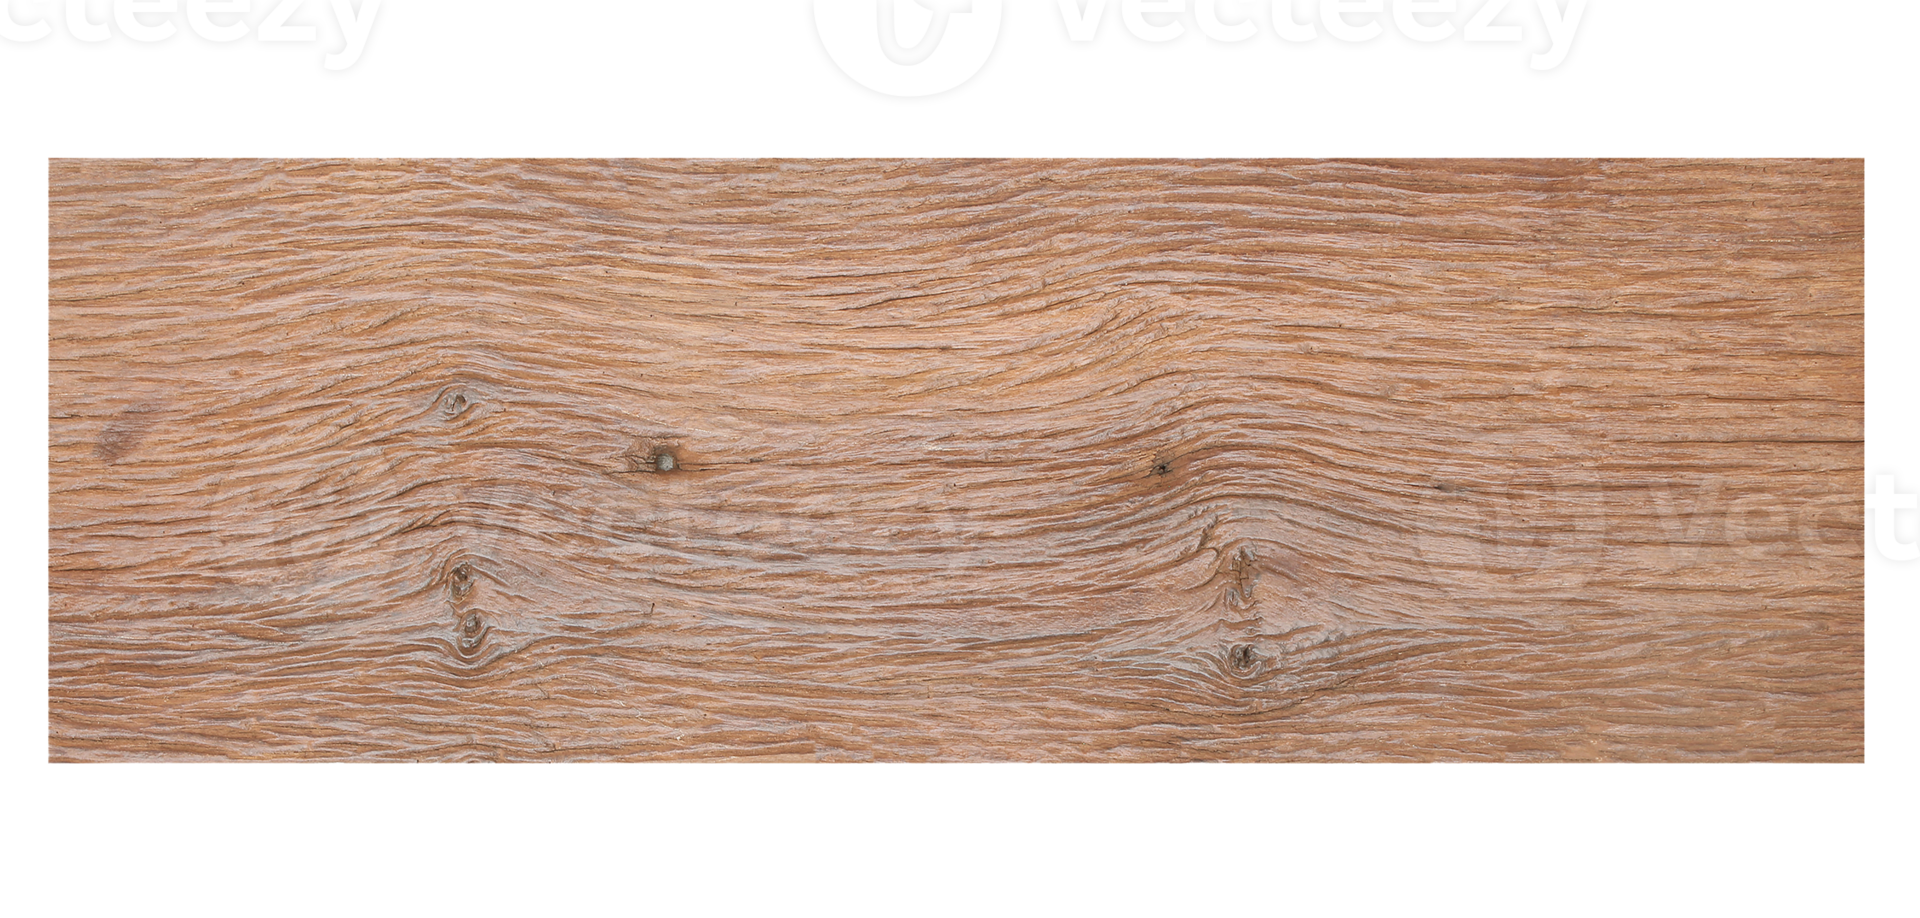 Nền chất liệu gỗ cổ đại miễn phí với độ trong suốt là một lựa chọn tuyệt vời để tăng thêm tính thẩm mỹ cho thiết kế của bạn. Với những mẫu sàn gỗ cổ đại chất lượng cao, bạn sẽ dễ dàng tìm được mẫu thuộc về phong cách yêu thích của mình. Hãy tải xuống định dạng tệp PNG trong suốt từ chúng tôi để tạo ra những thiết kế độc đáo và đẹp mắt nhất!